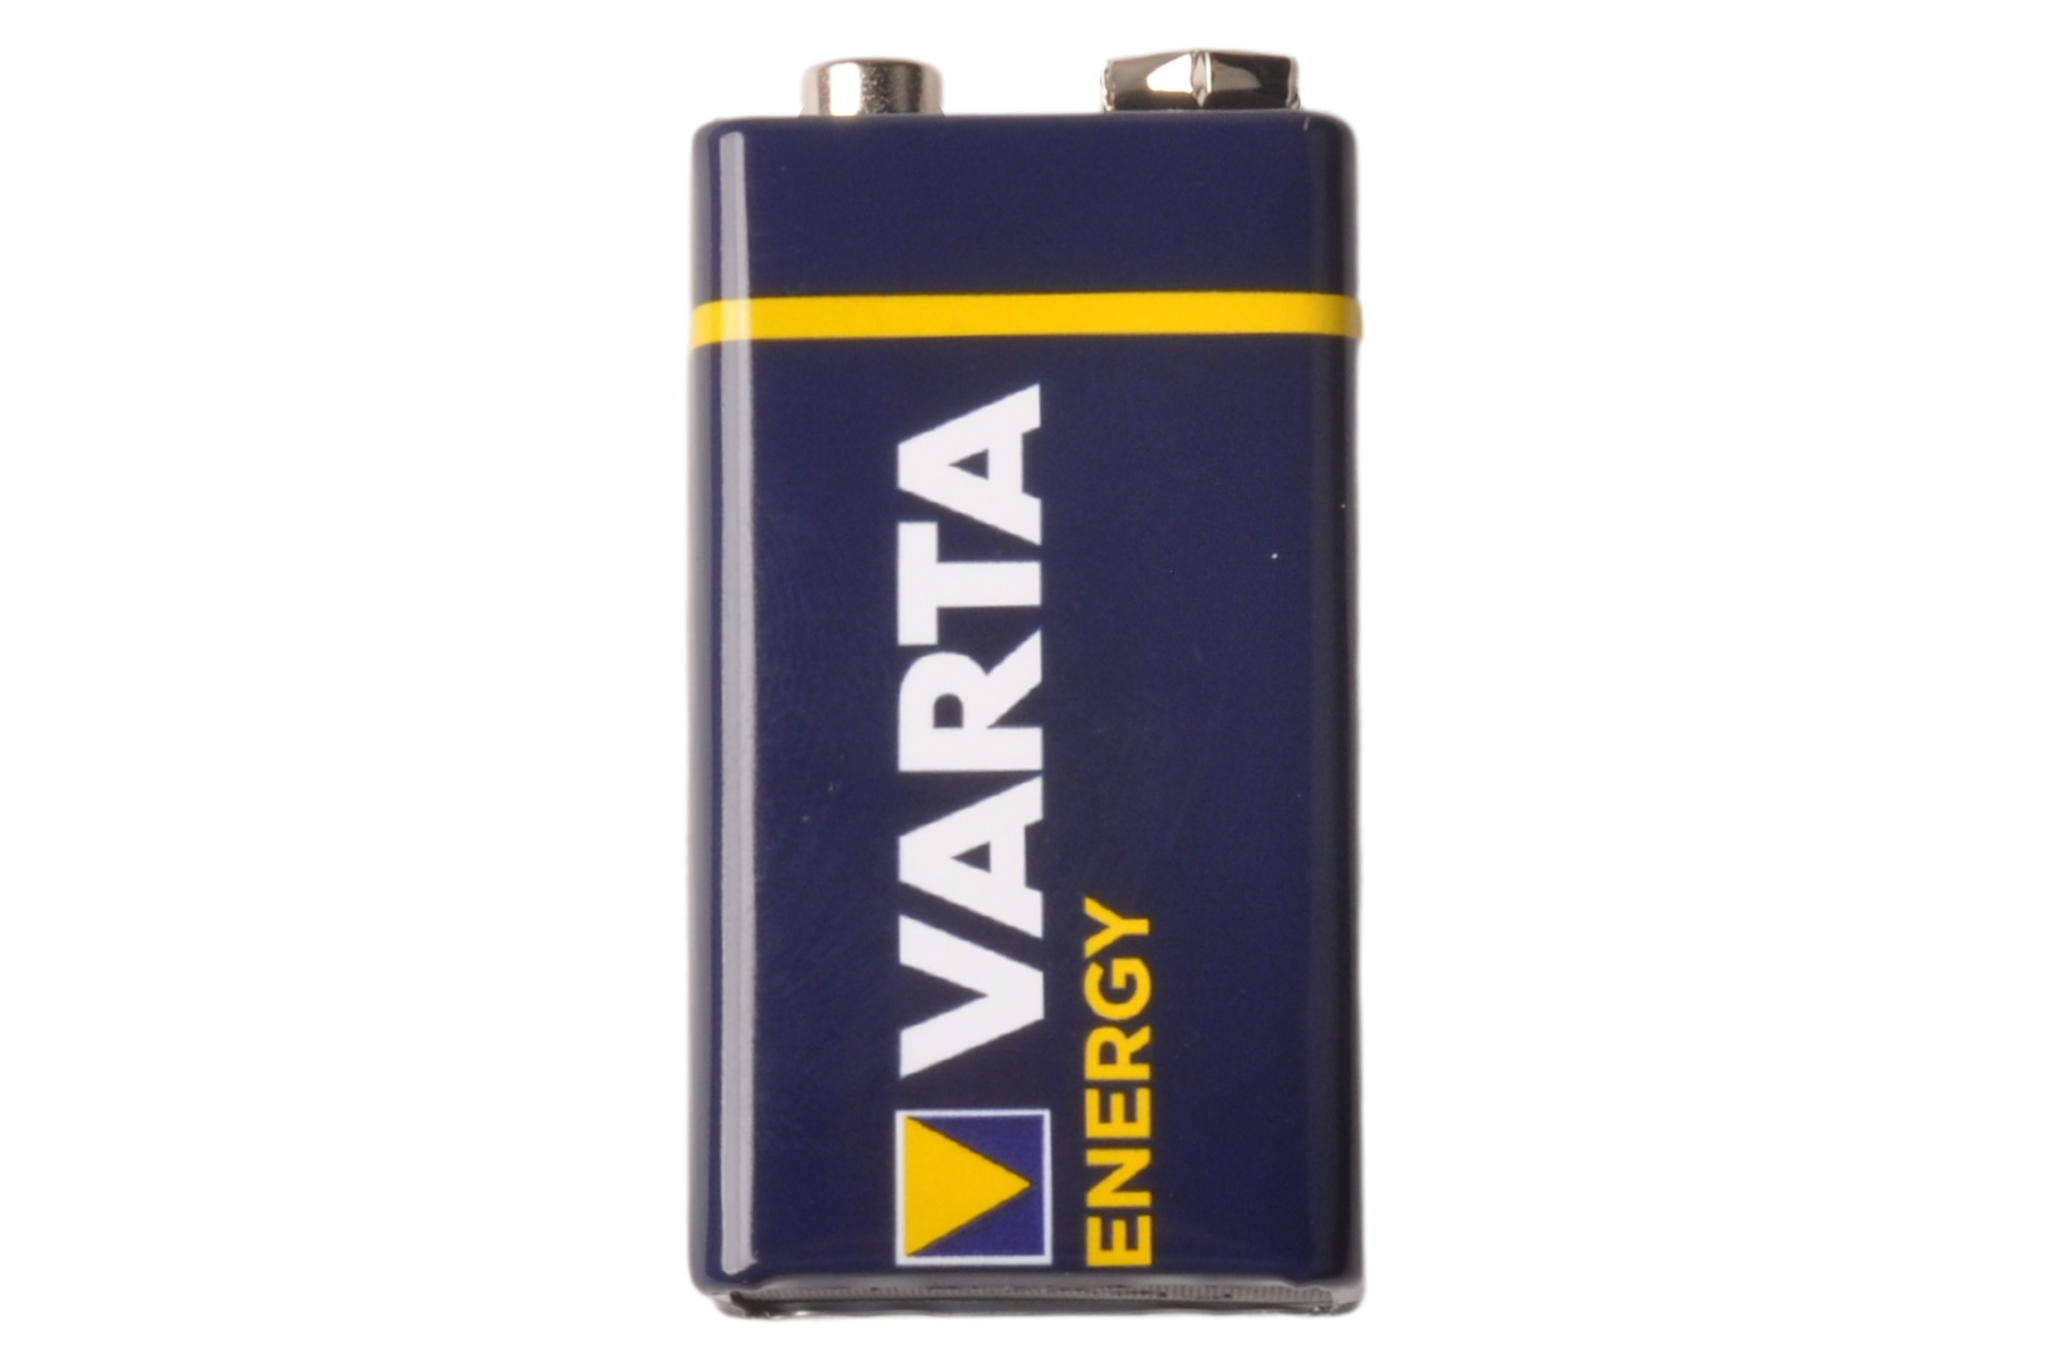 Pile Varta High Energy 9V